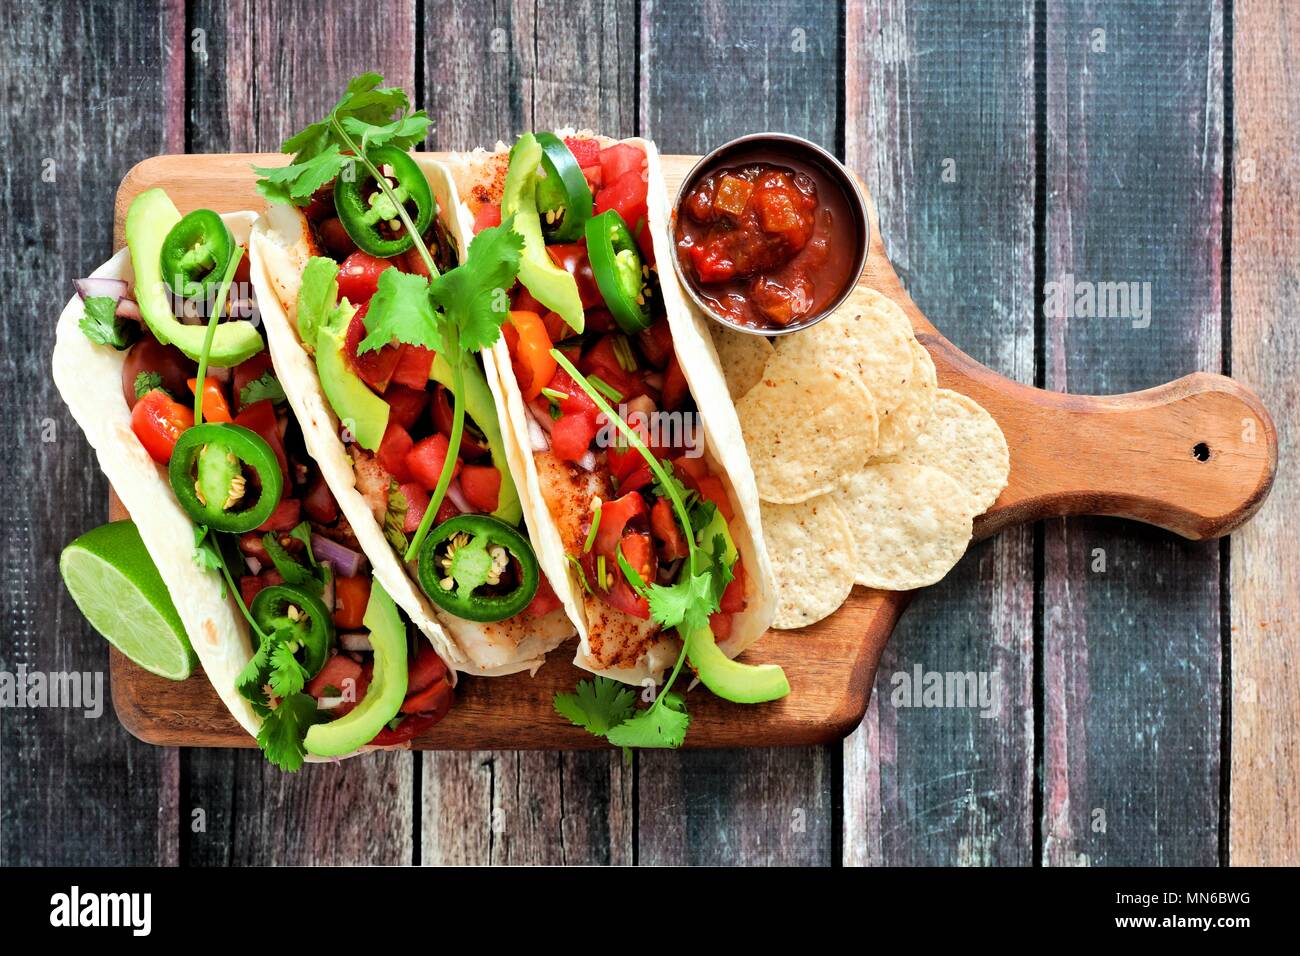 Würziger Fisch Tacos mit Wassermelone salsa und Avocados auf einem Paddle Board gegen ein rustikales Holz Hintergrund Stockfoto